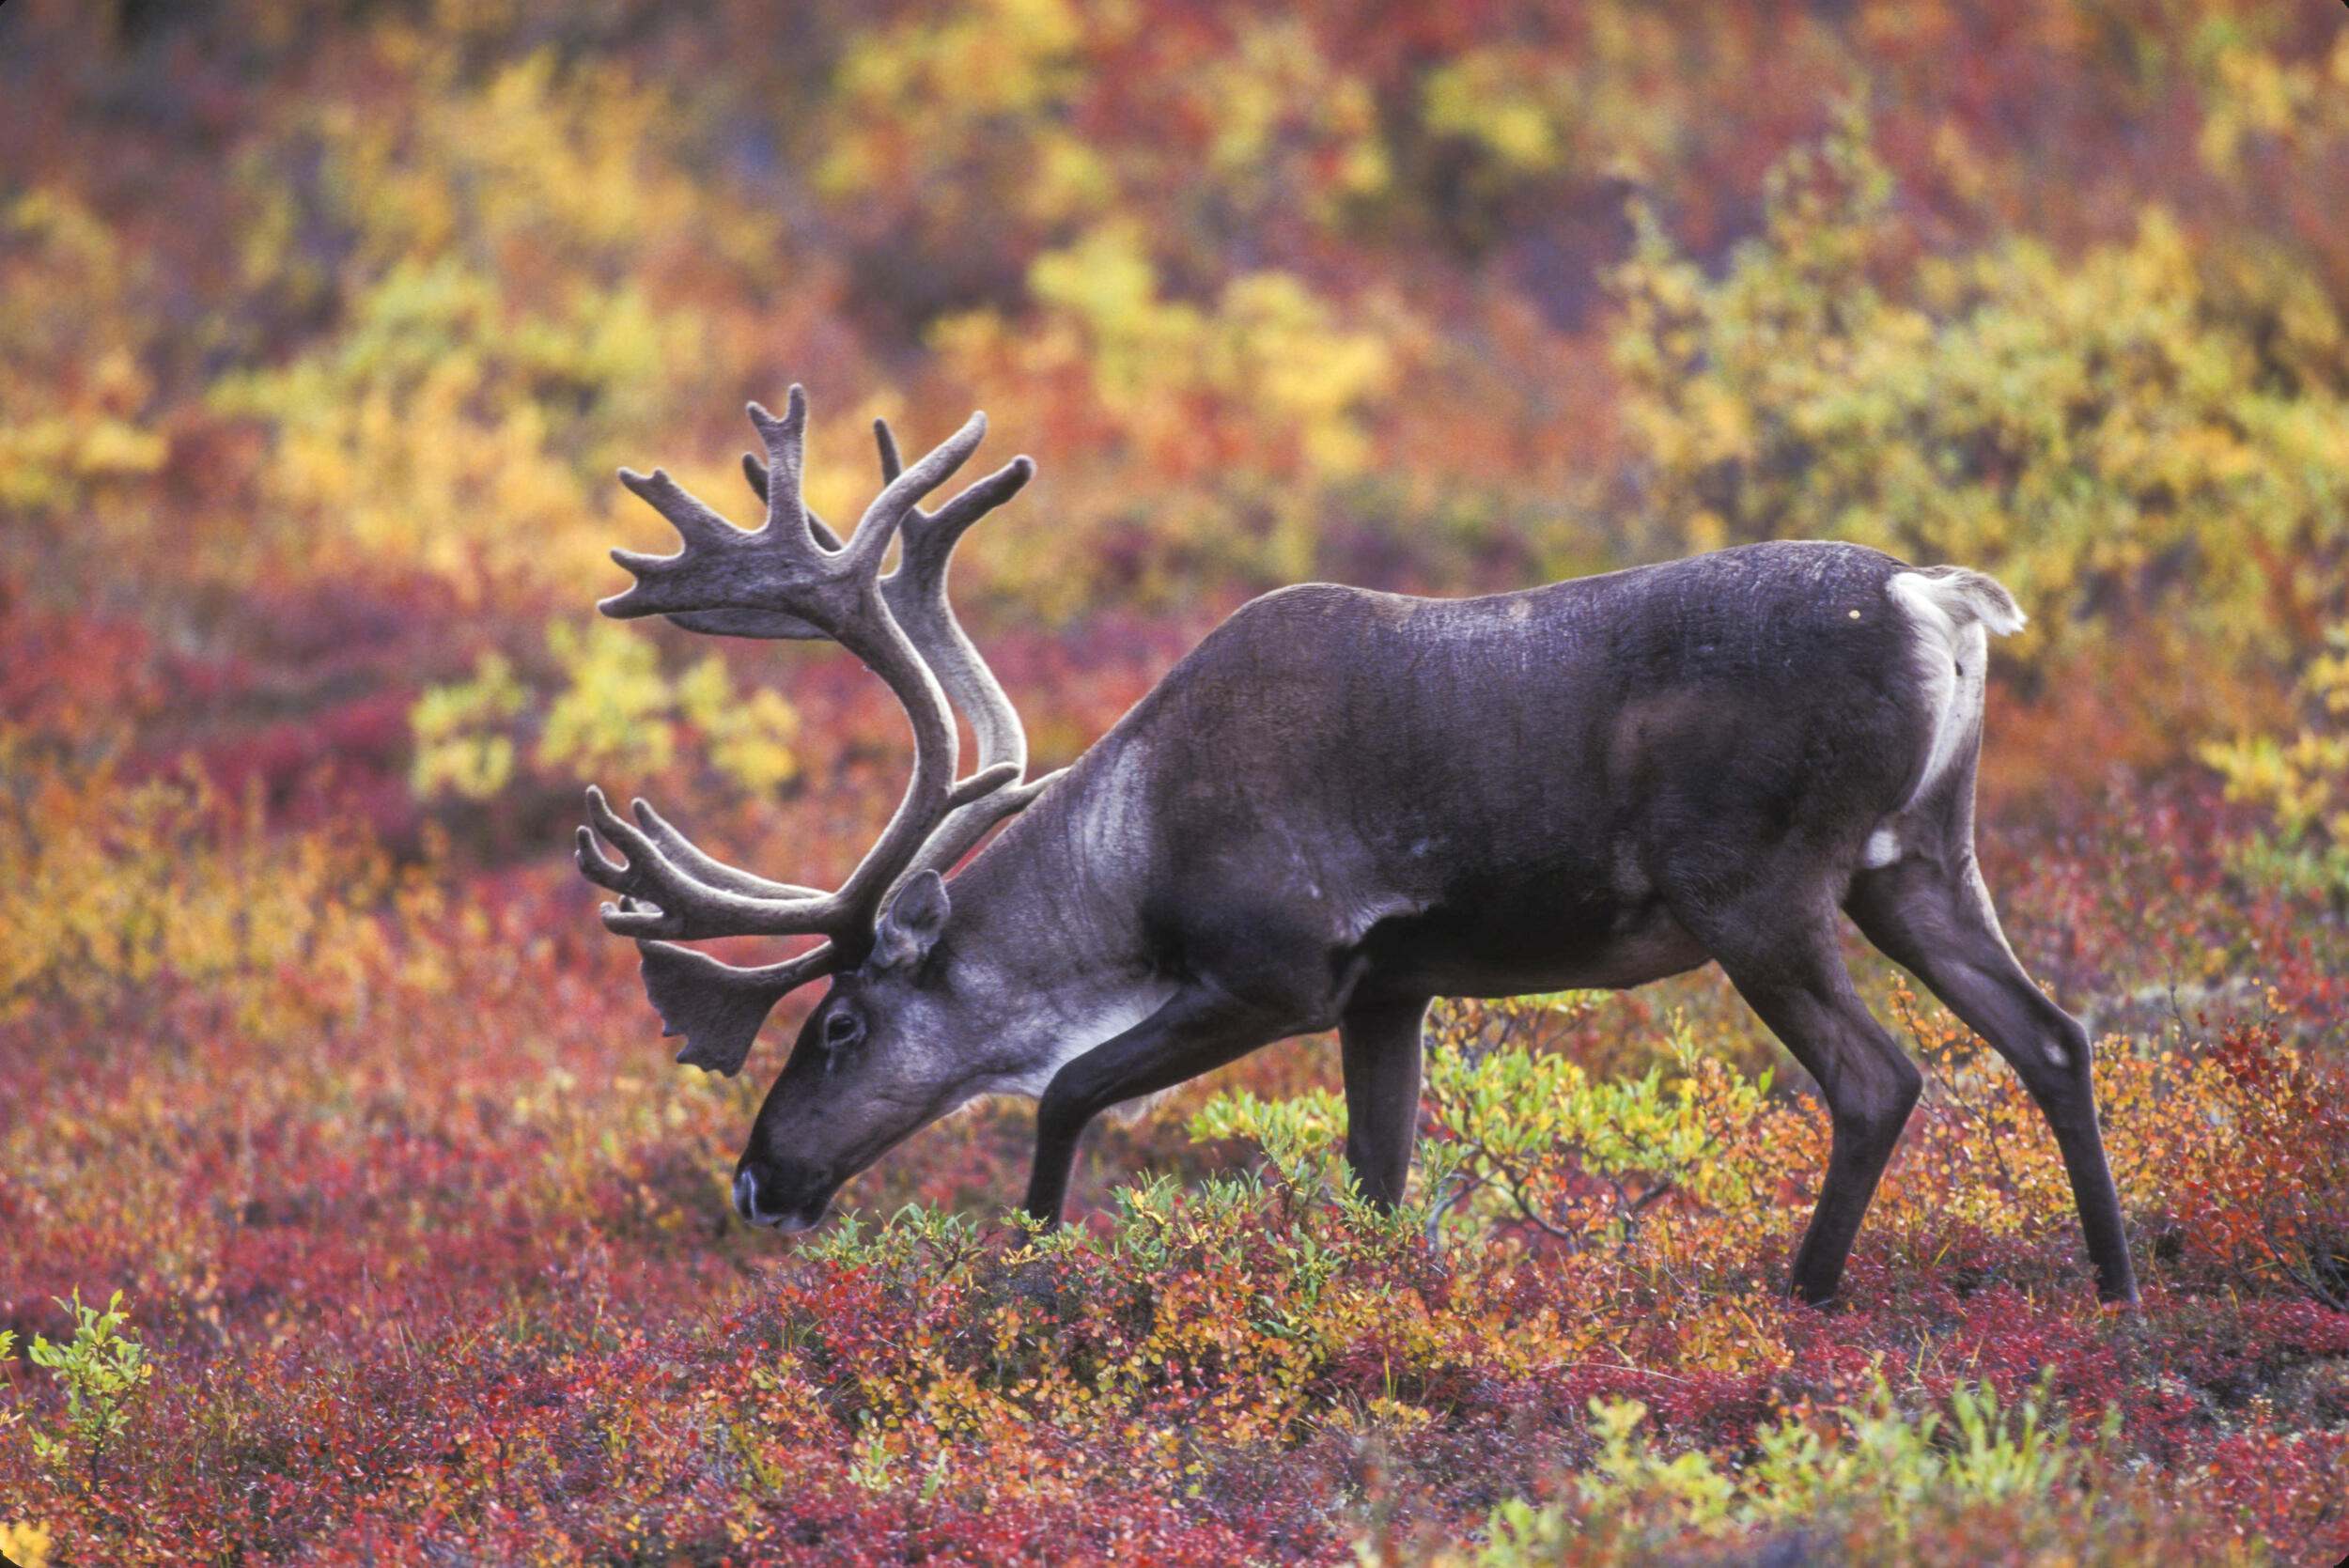 A caribou grazes in a fall-colored field.